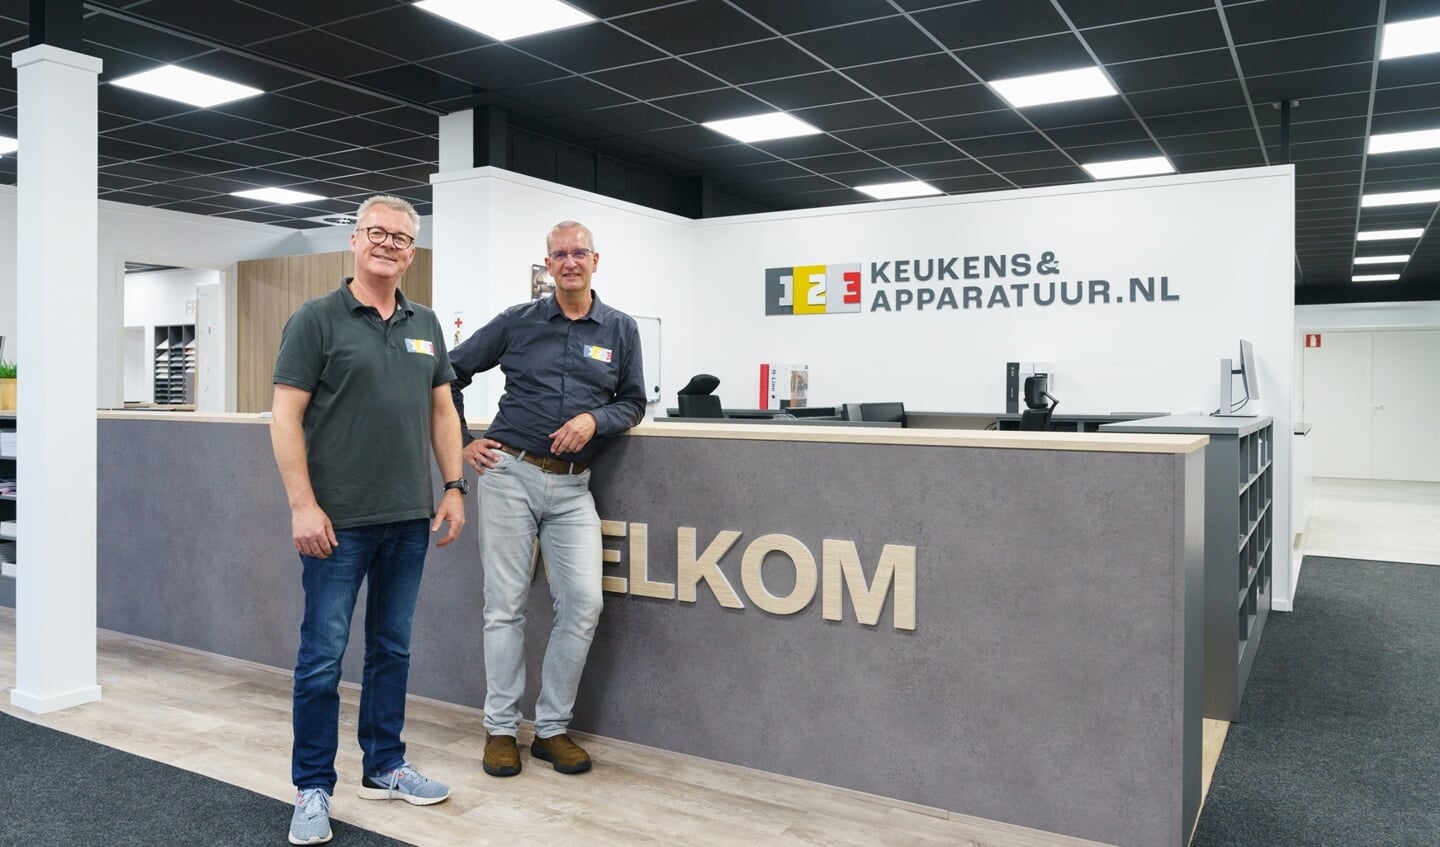  Norbert Torsing en collega Jan bij de toonbank van 123Keukens&Apparatuur.